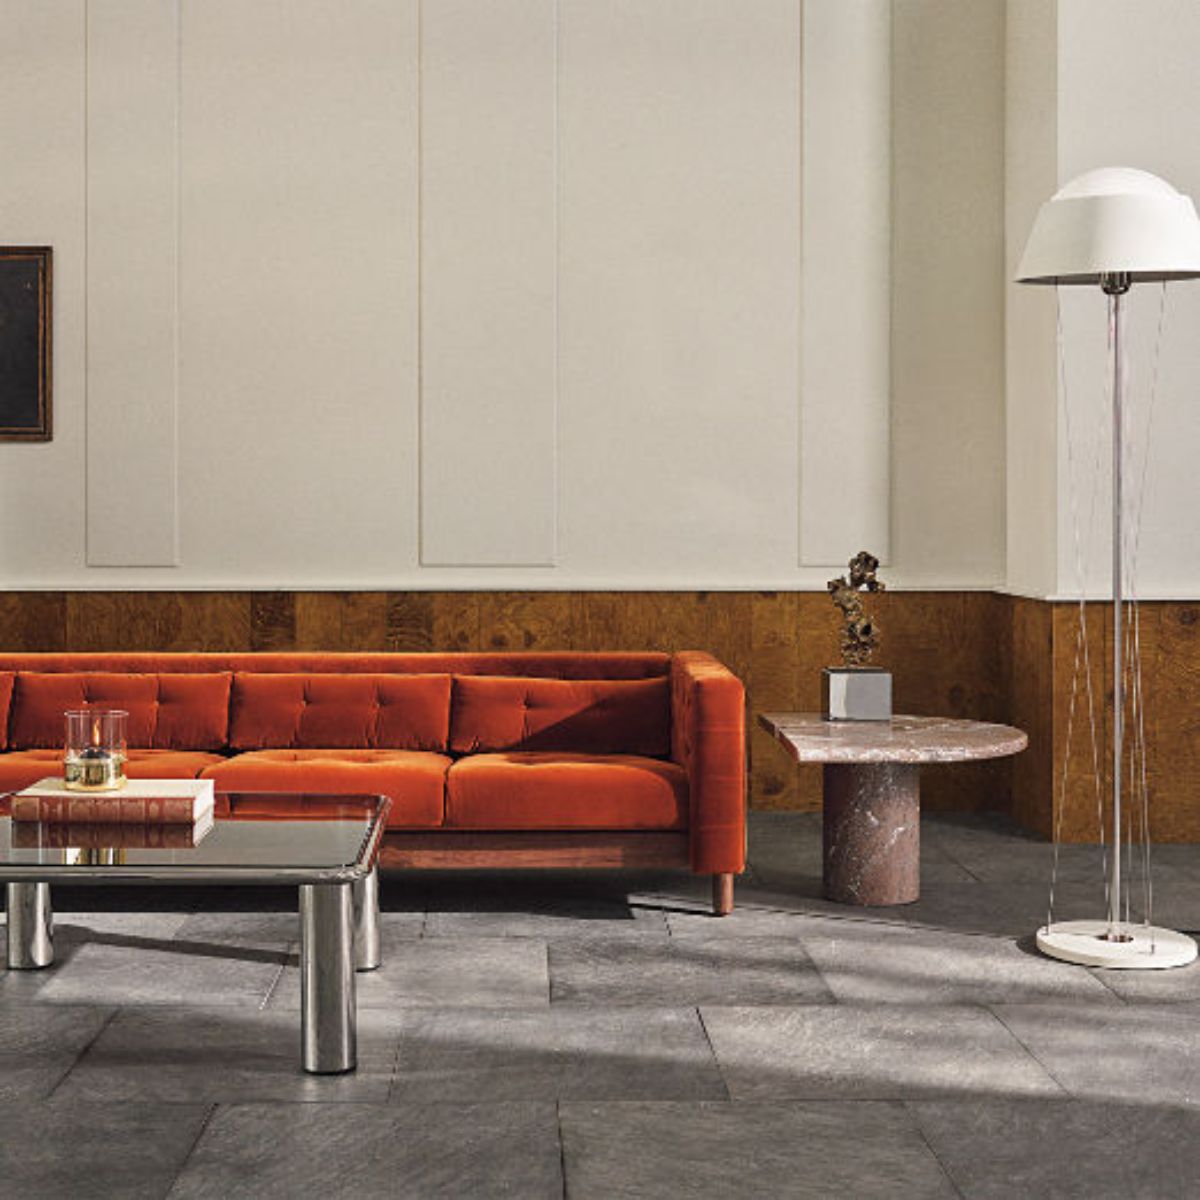 由CB2家具制作的客厅橙色沙发令人惊叹